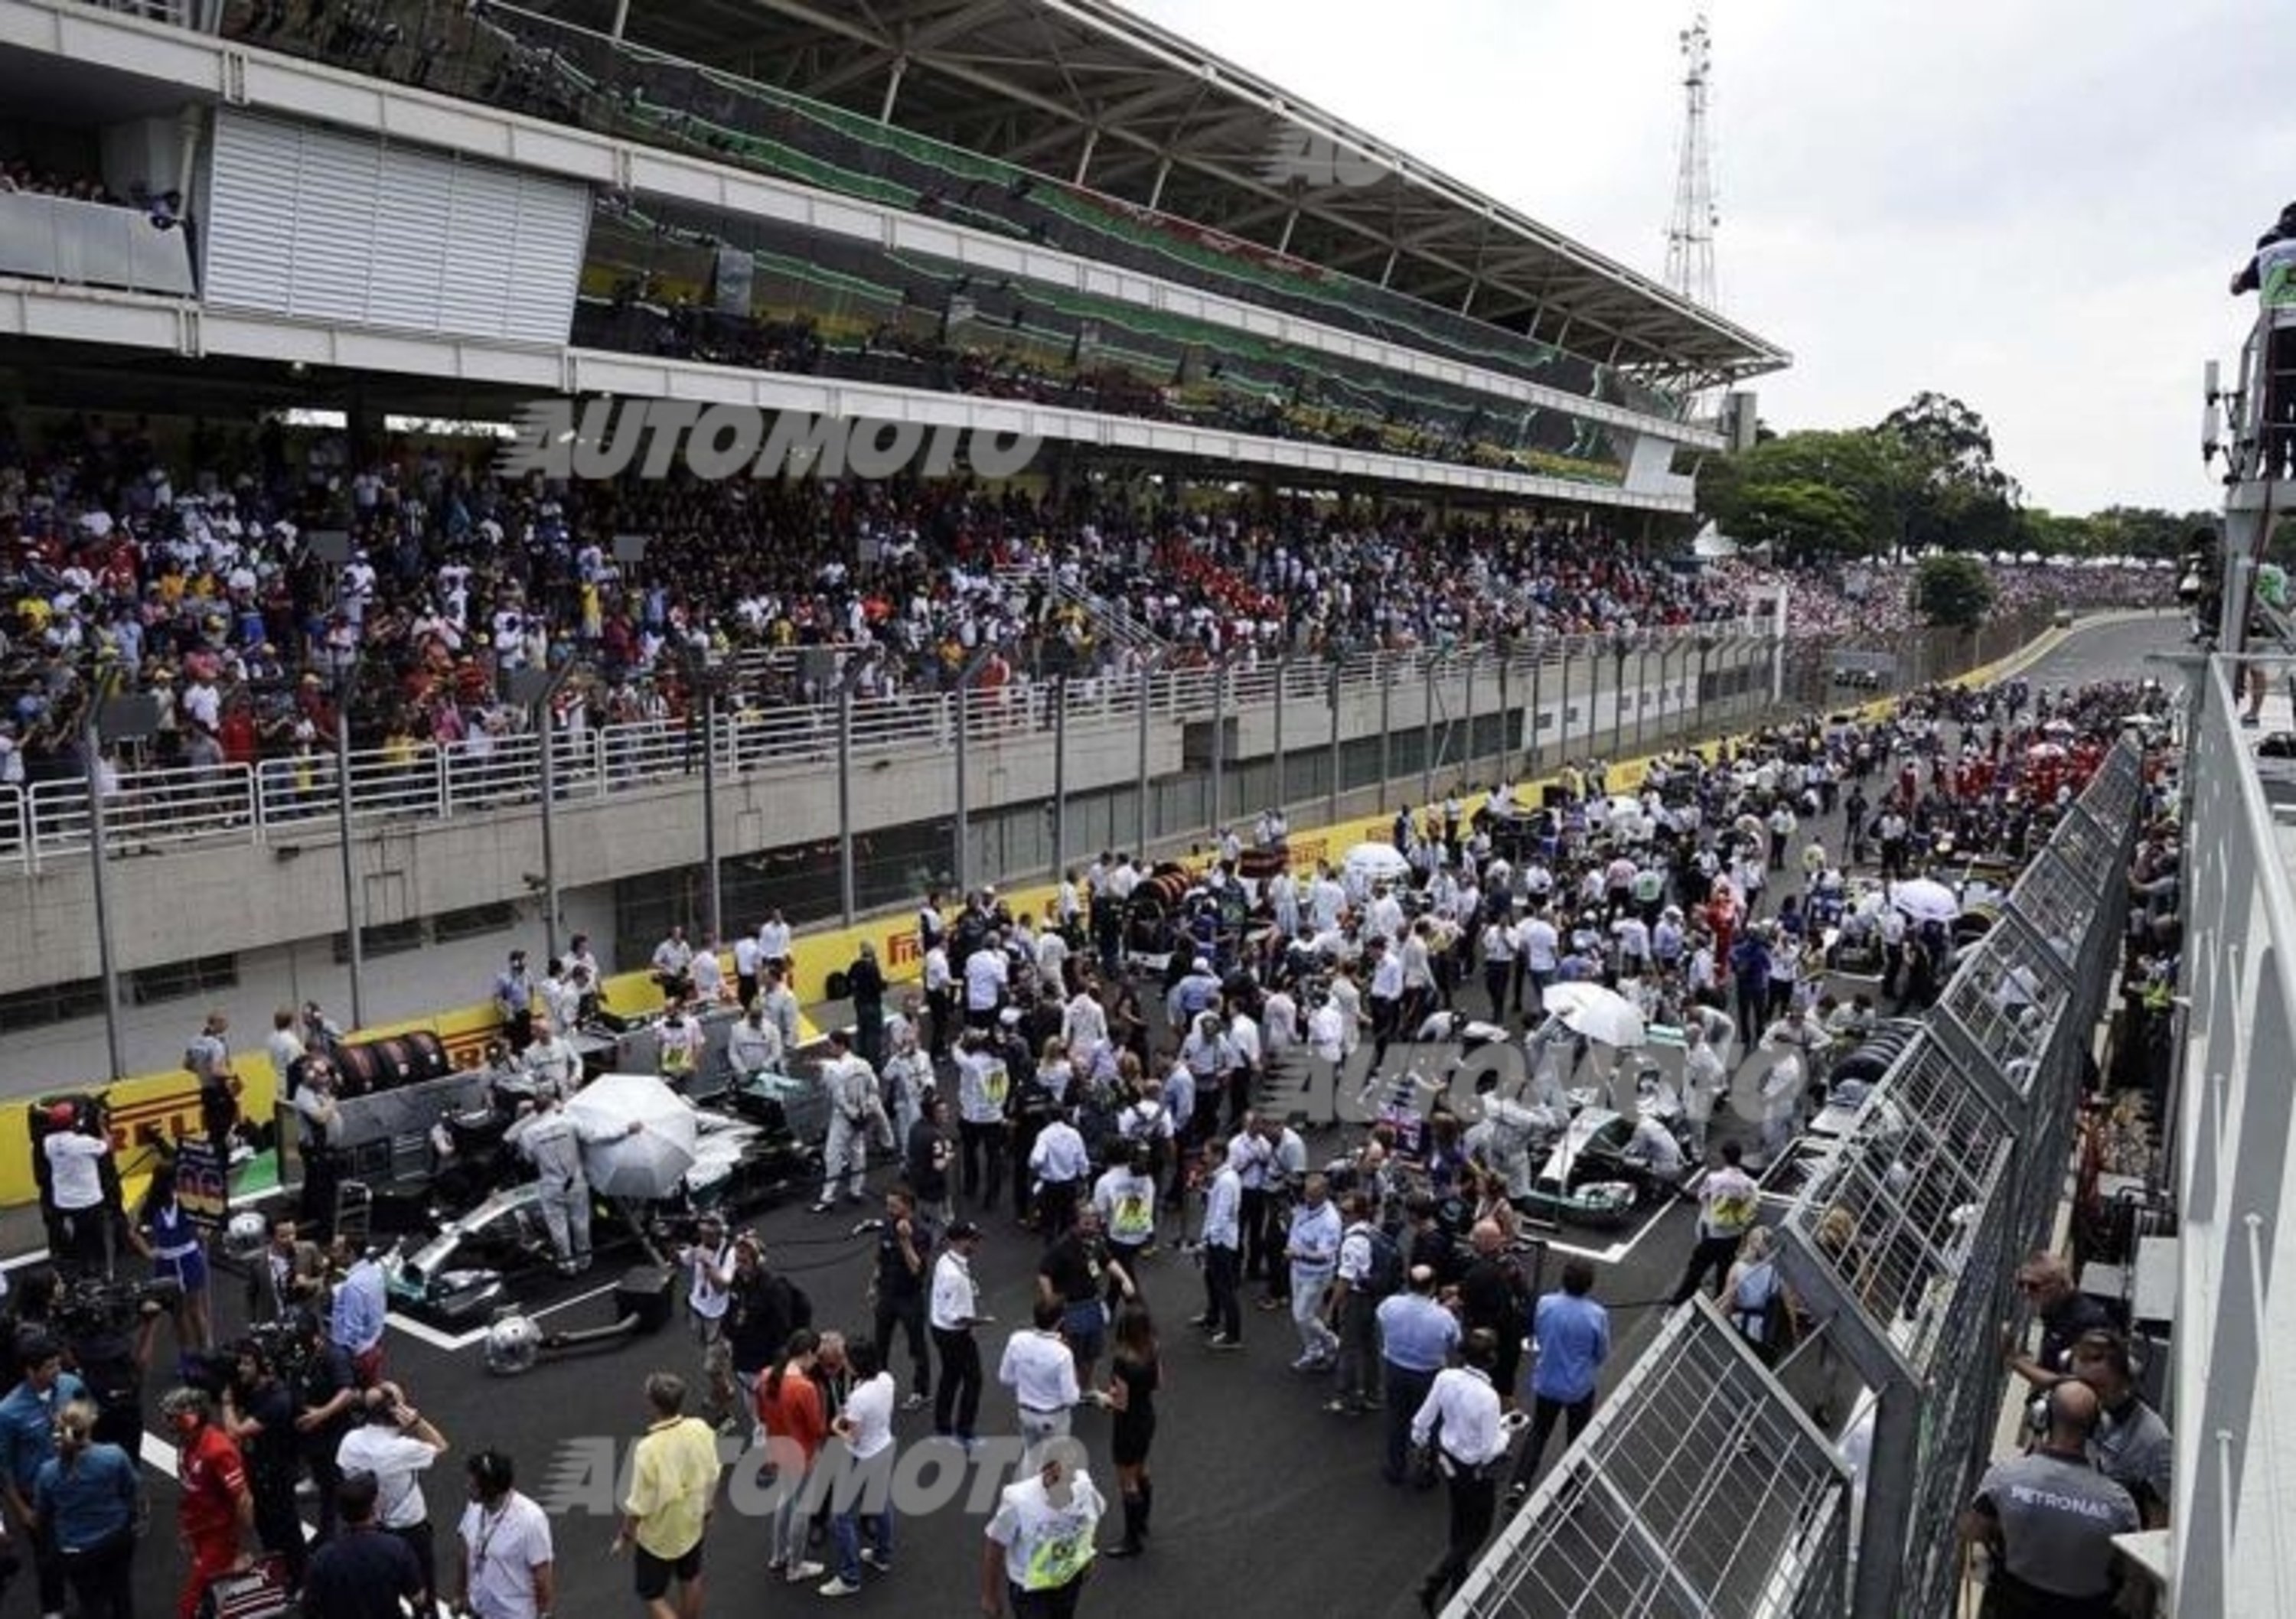  Formula 1: nuove regole e calendario rivisto per il 2015